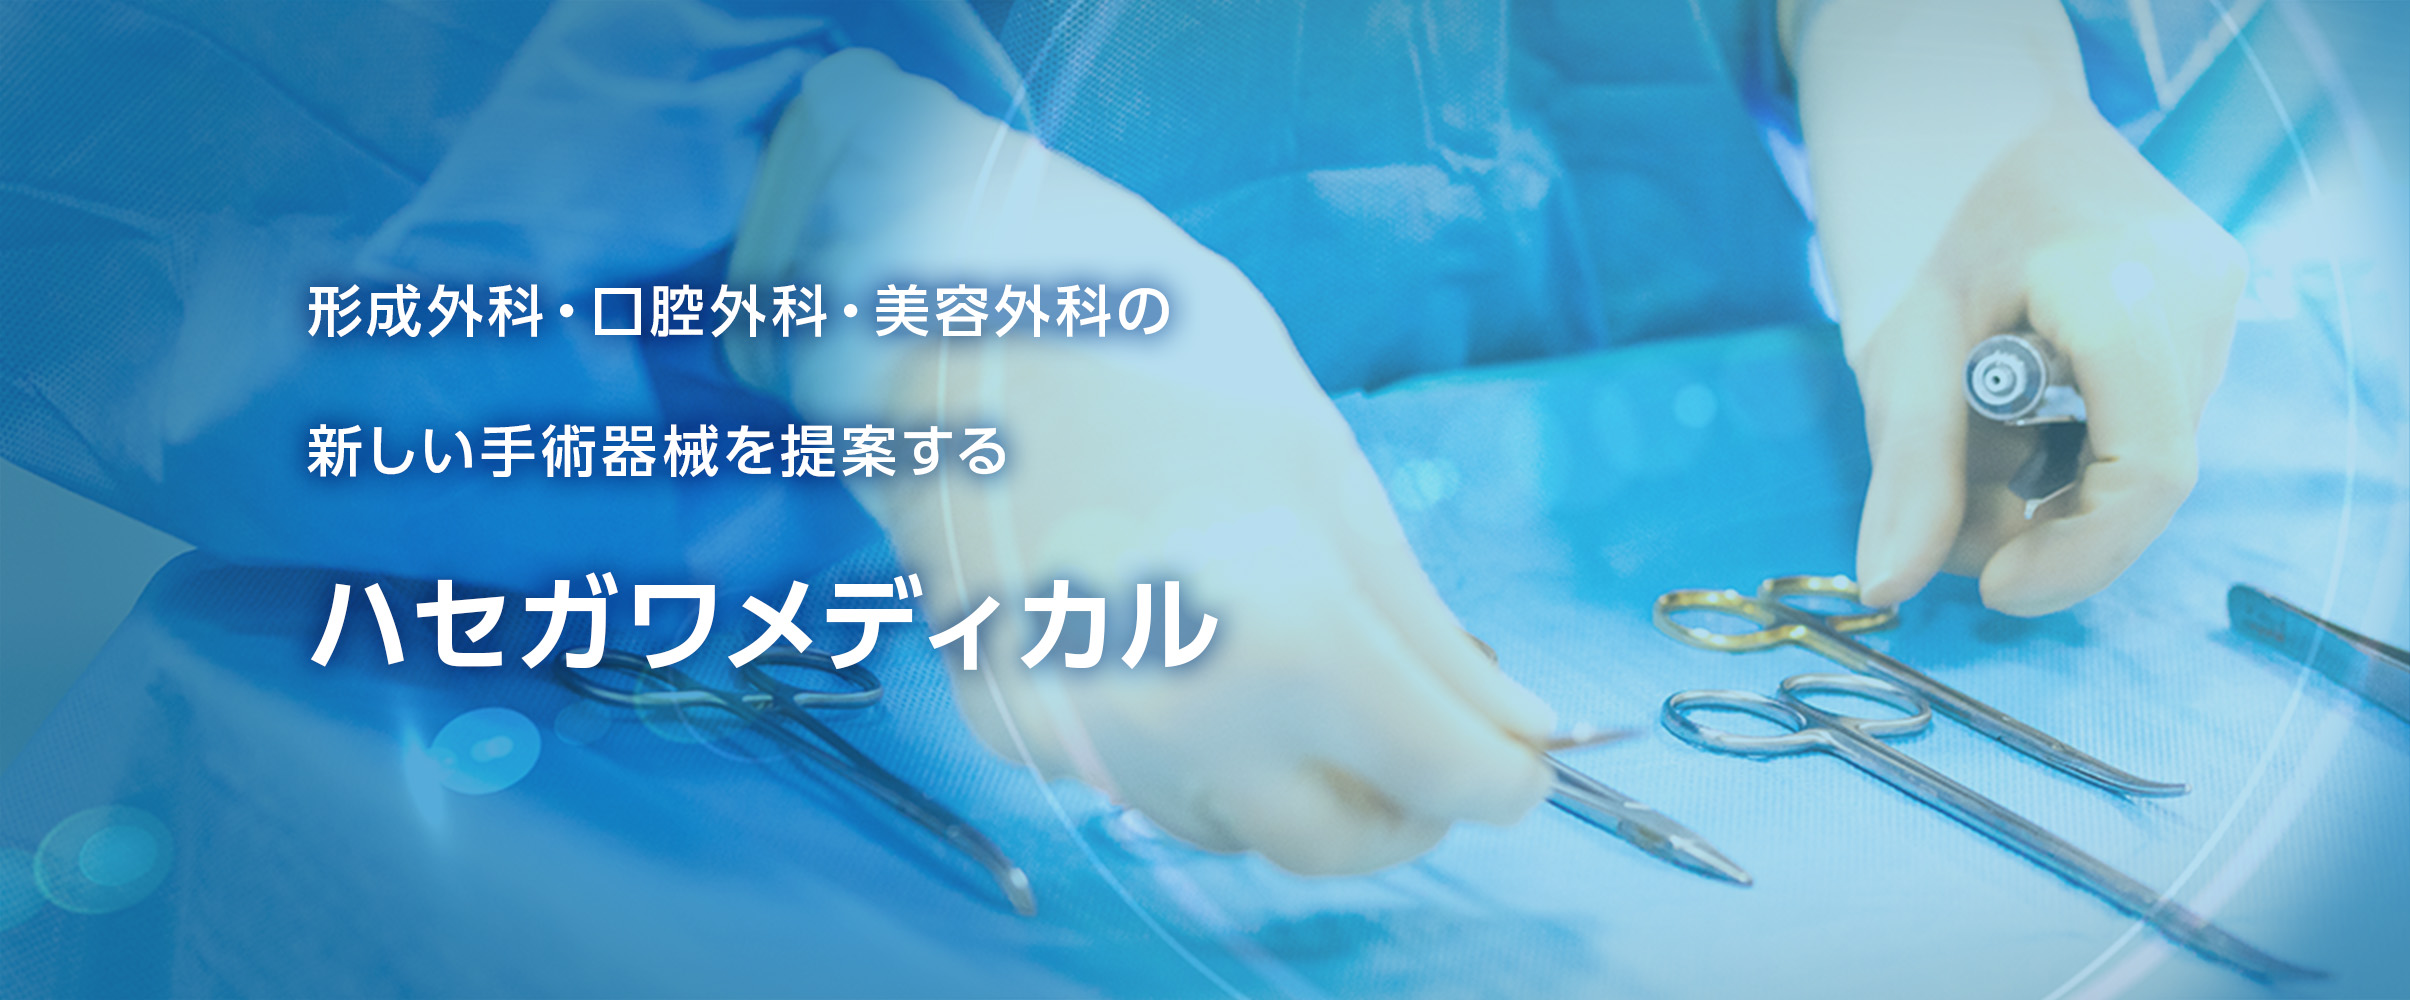 形成外科・口腔外科・美容外科の新しい手術器械を提案するハセガワメディカル